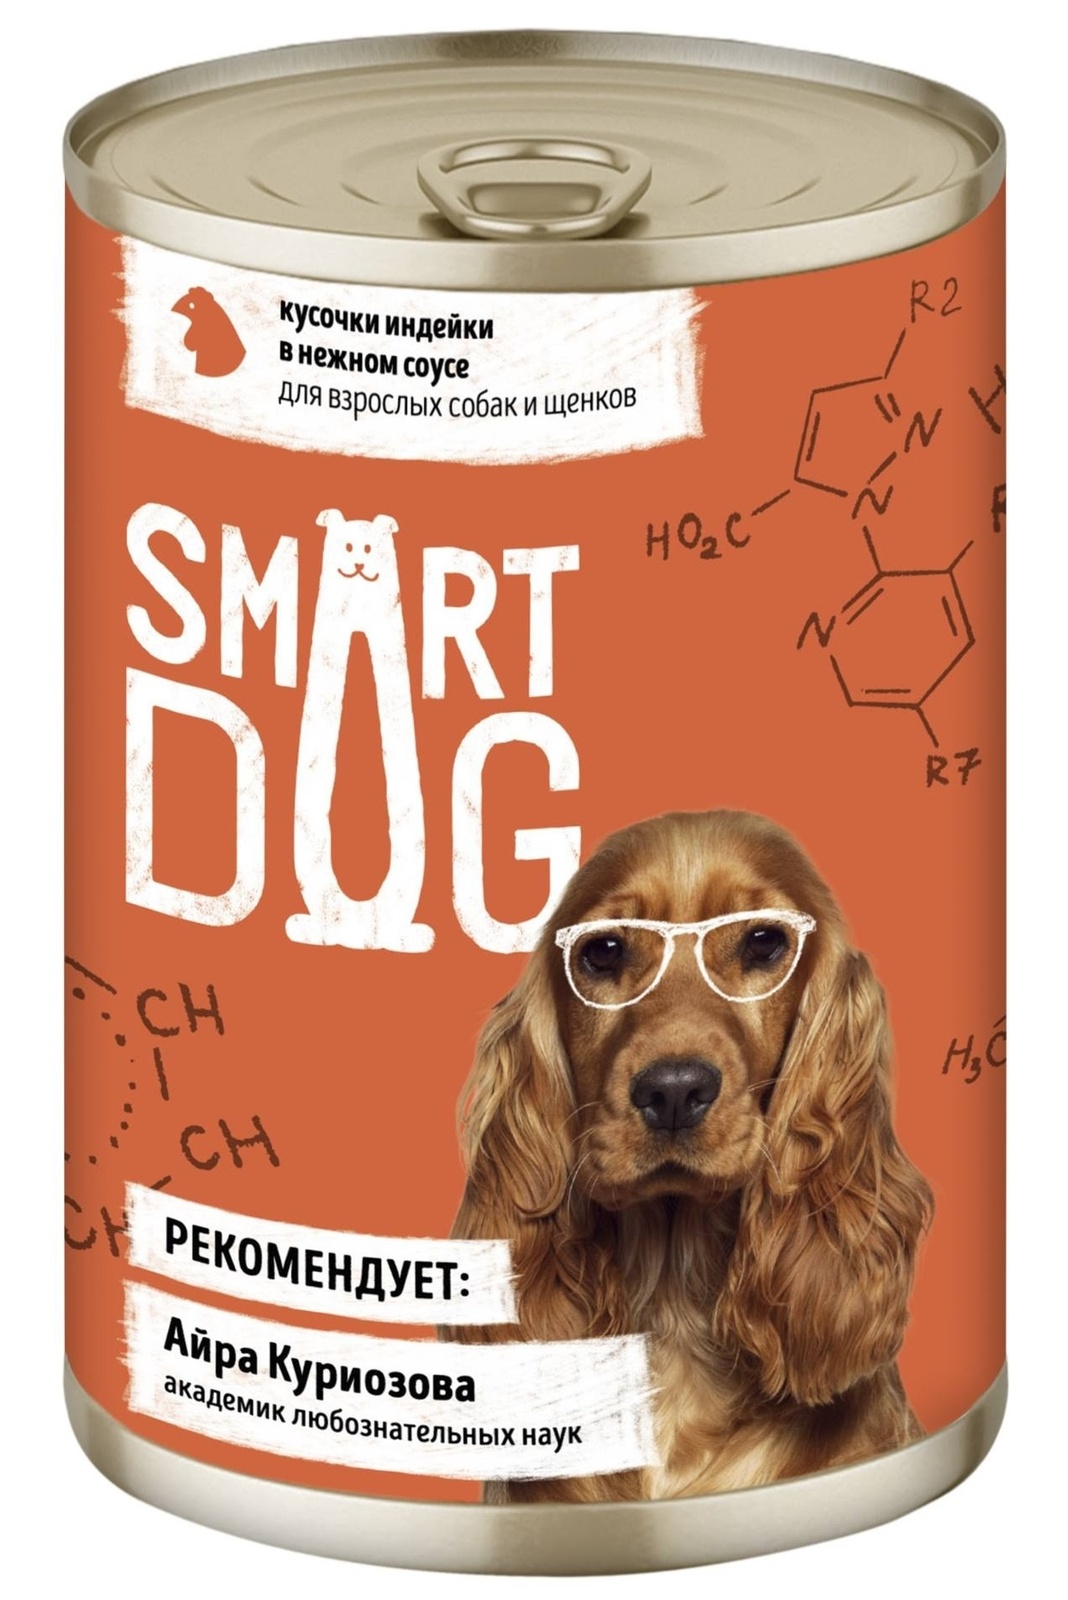 Smart Dog консервы Smart Dog консервы консервы для взрослых собак и щенков кусочки индейки в нежном соусе (850 г)